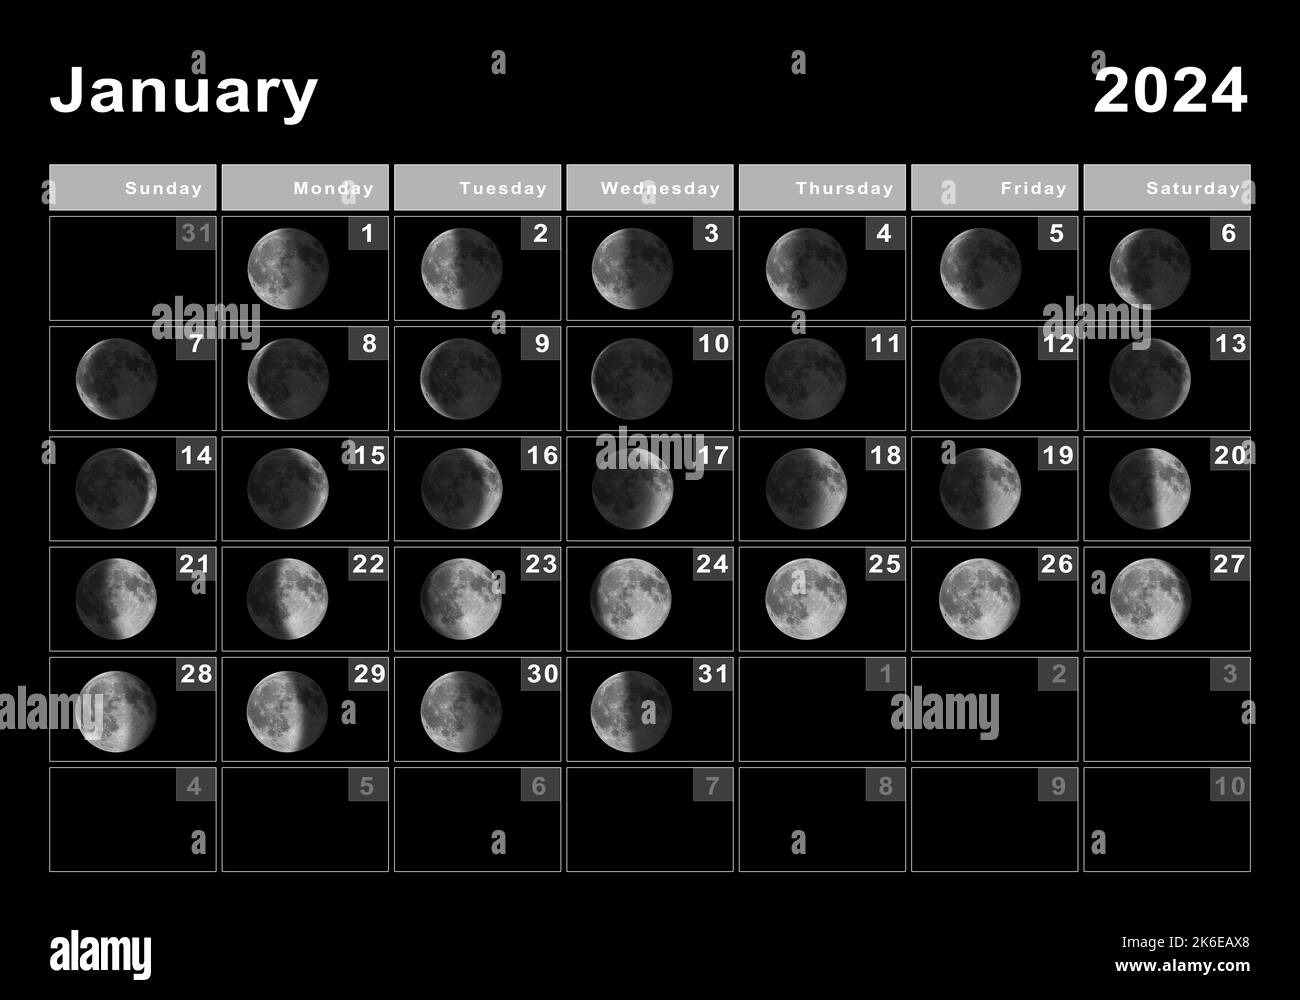 January 2024 Calendar With Moon Phases 2024 CALENDAR PRINTABLE